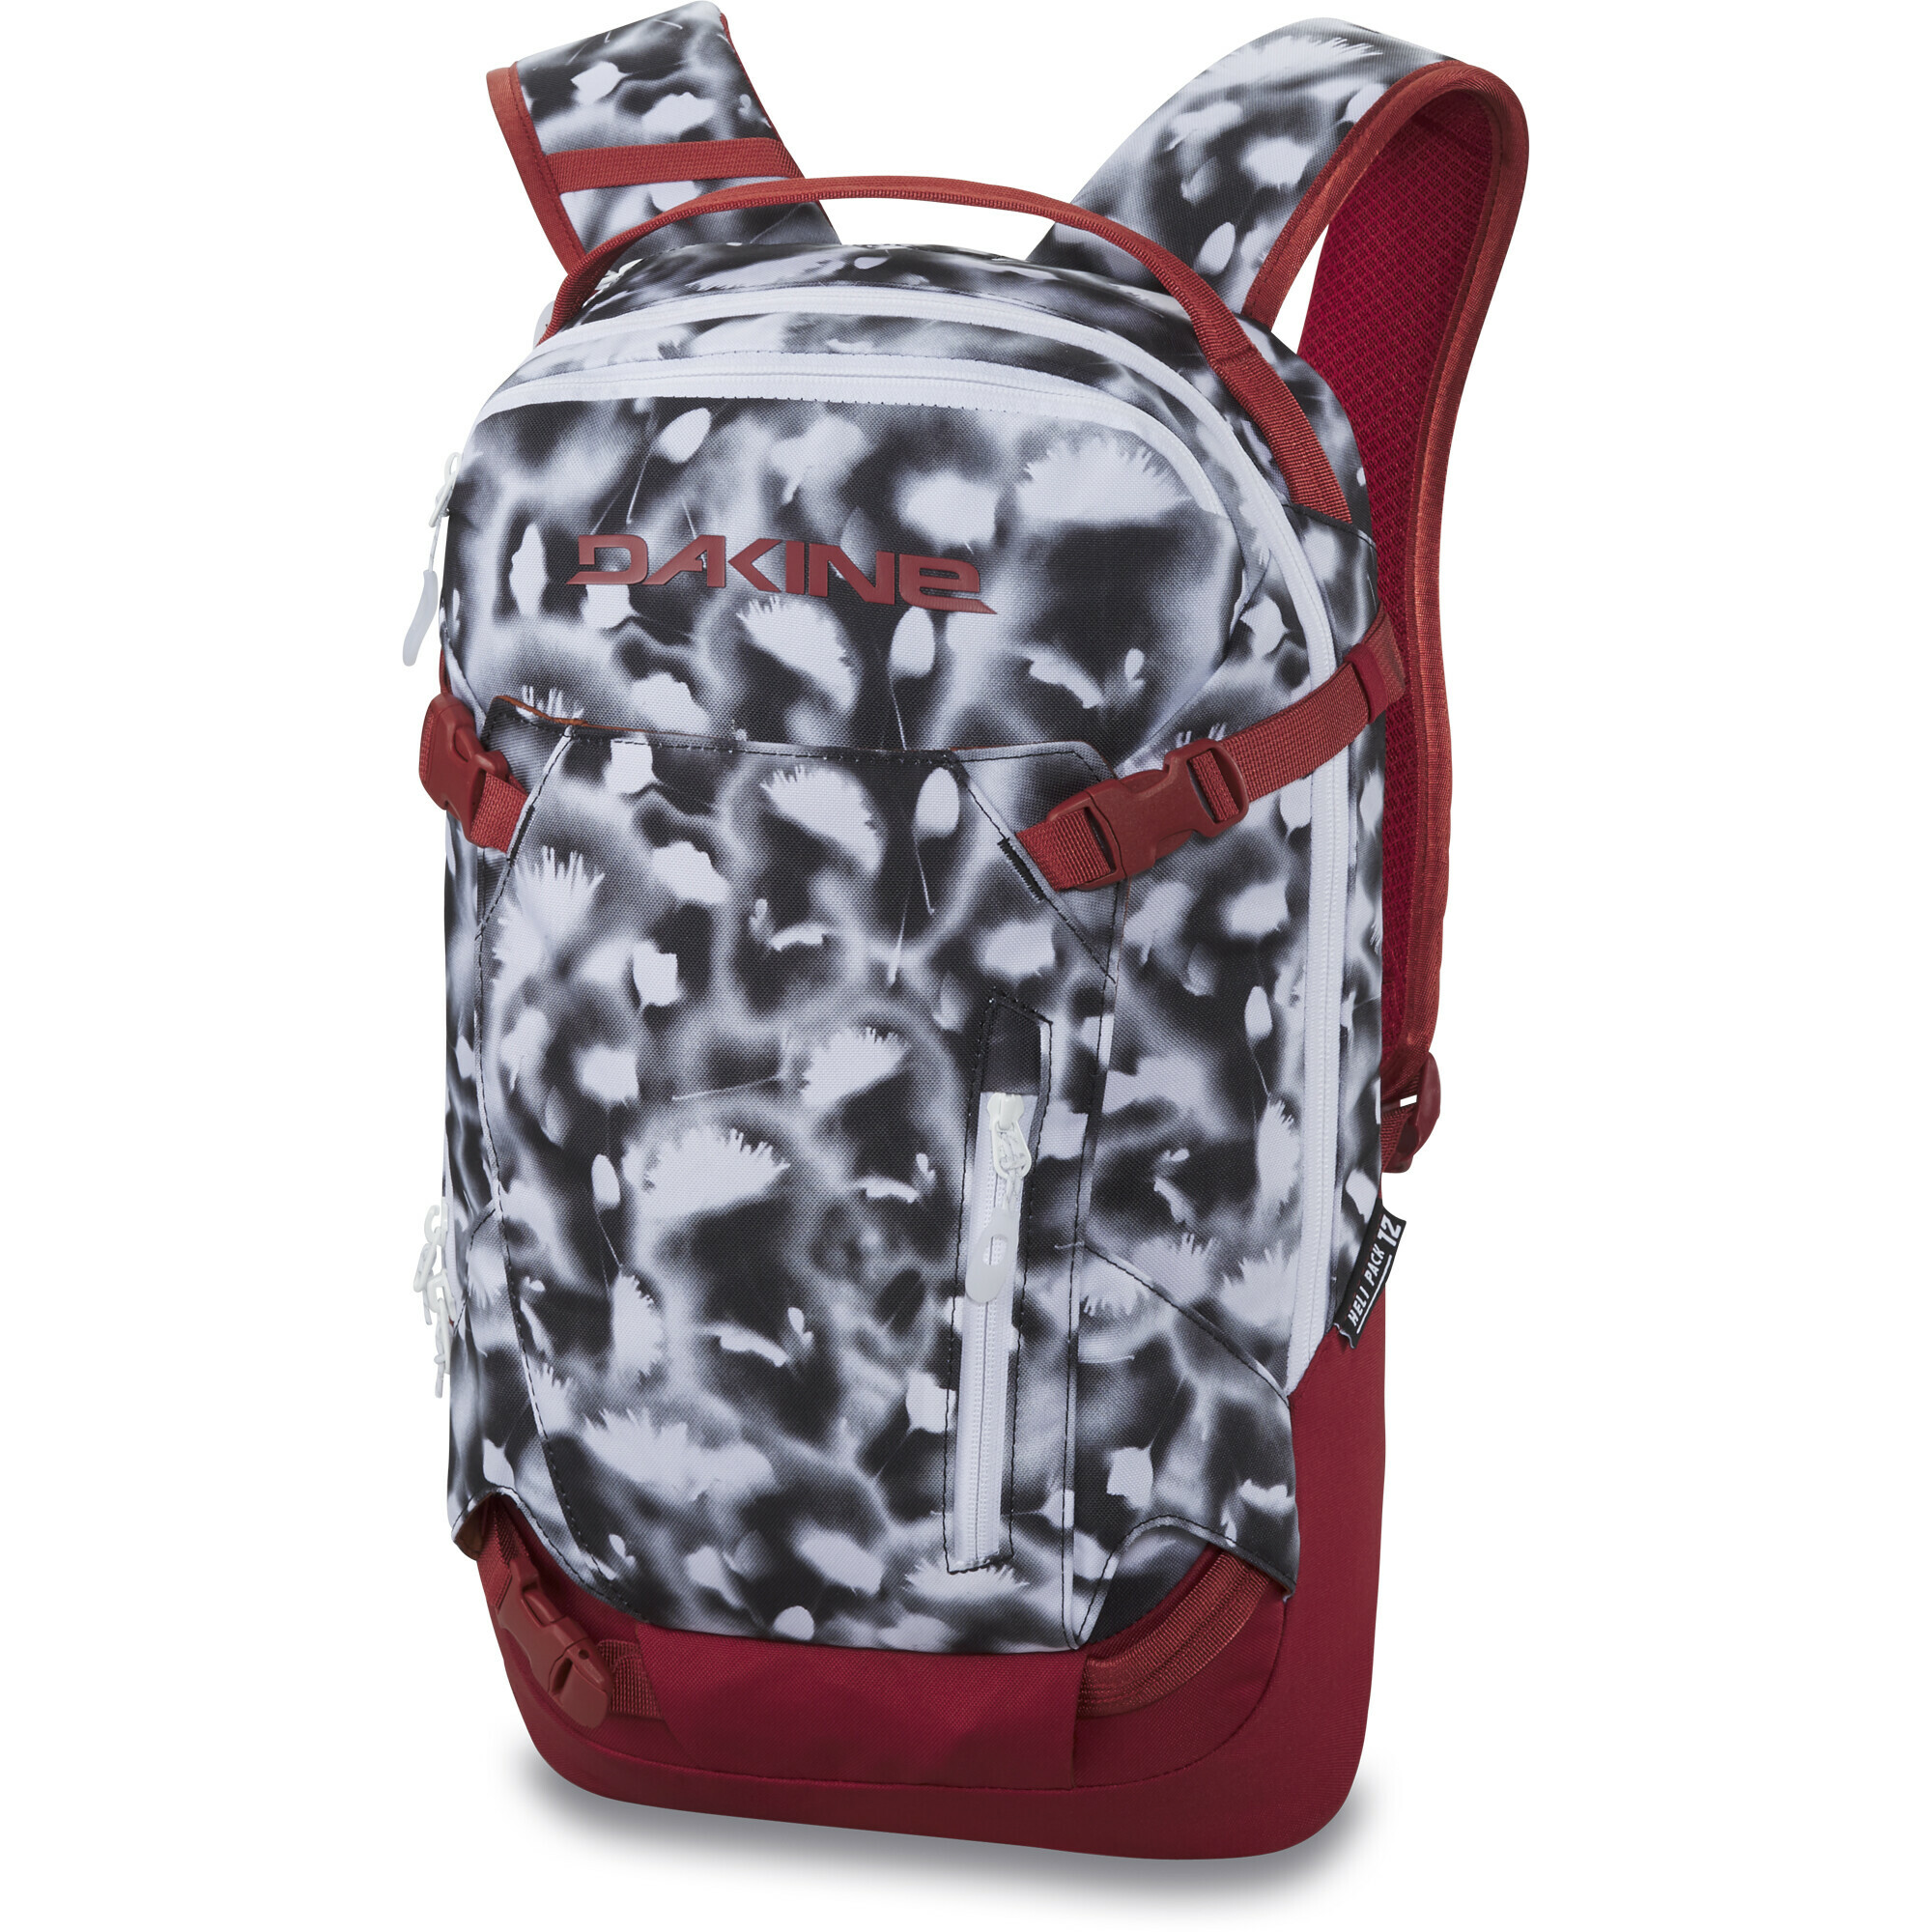 Heli Pro 20L Backpack - Women's